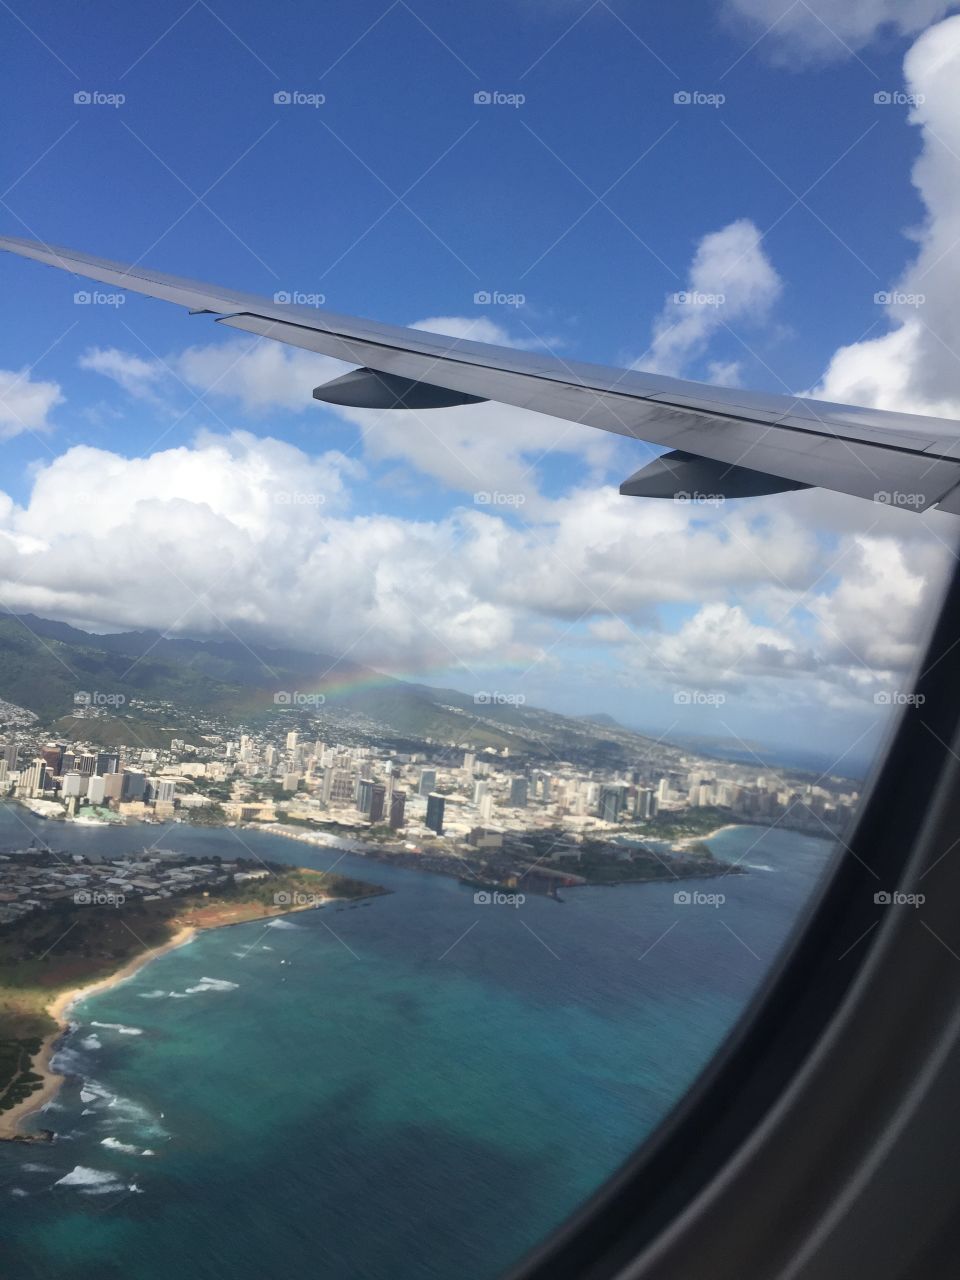 Rainbow over Oahu, Hawaii in May